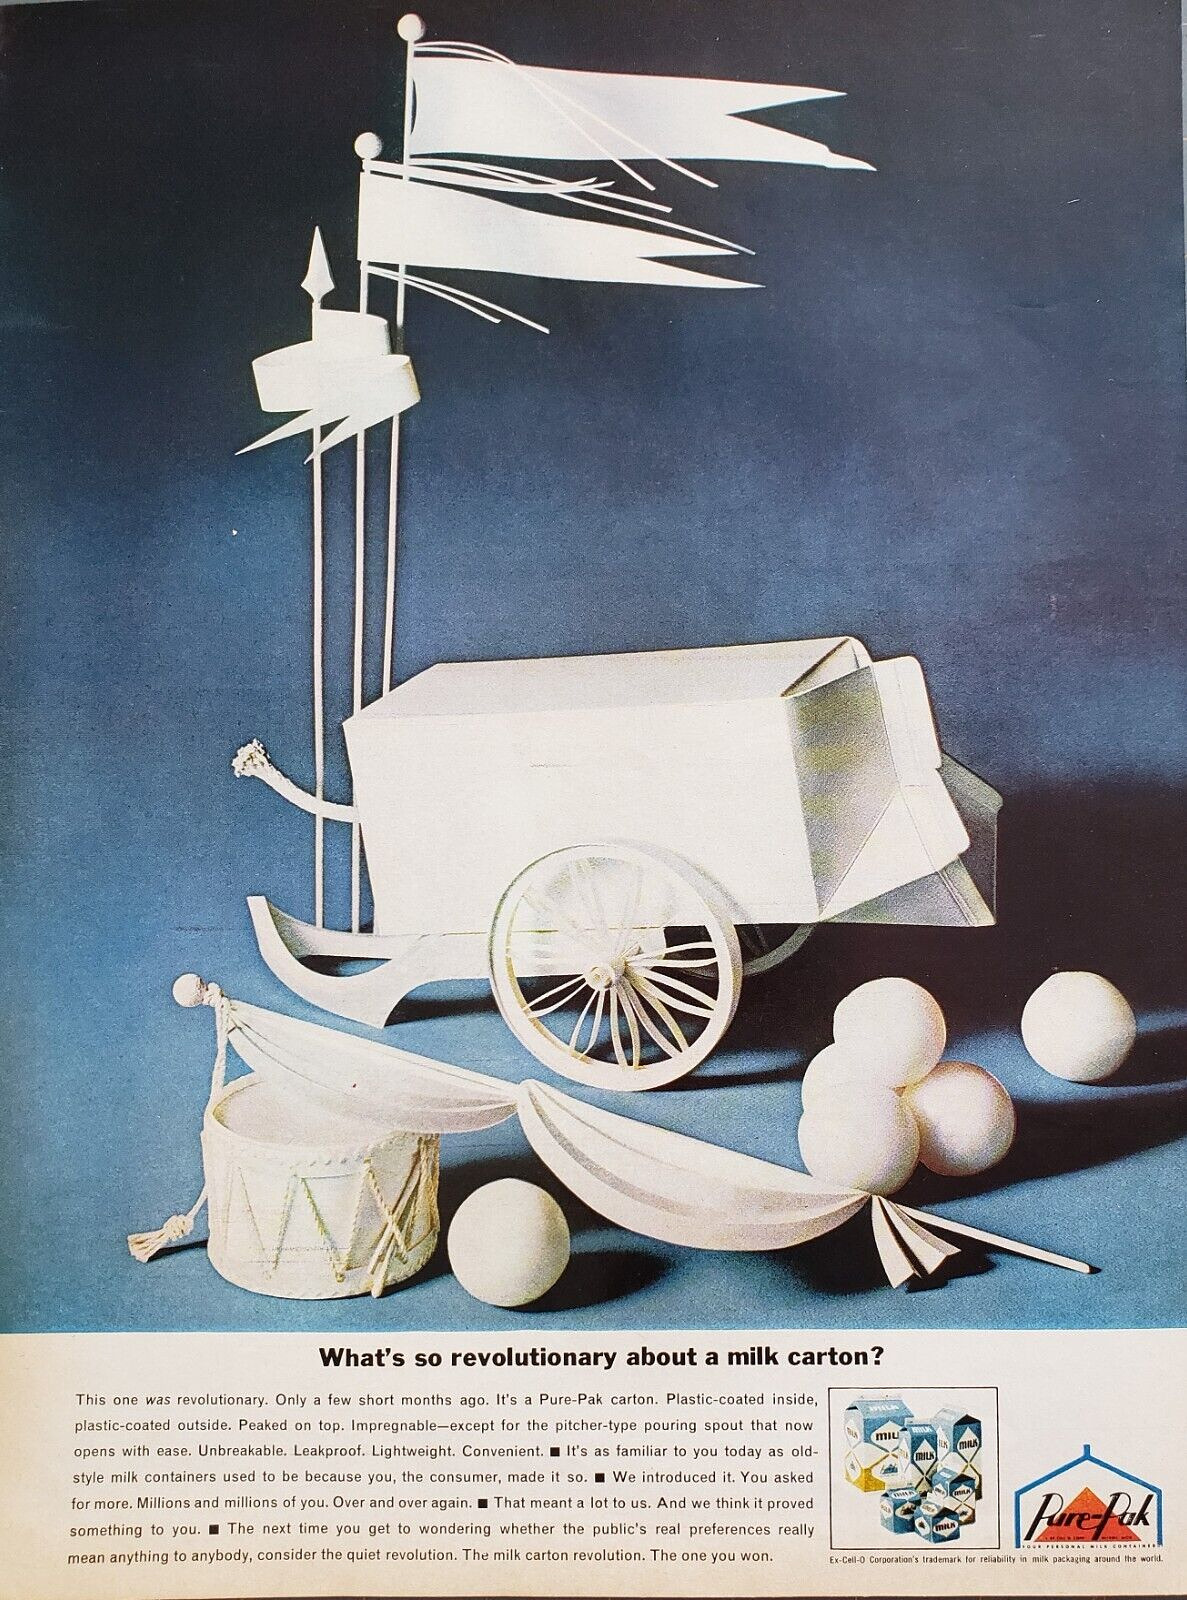 1963 Pure-Pak Milk Carton Plastic Coated Inside Drum Eggs Flags Print Ad